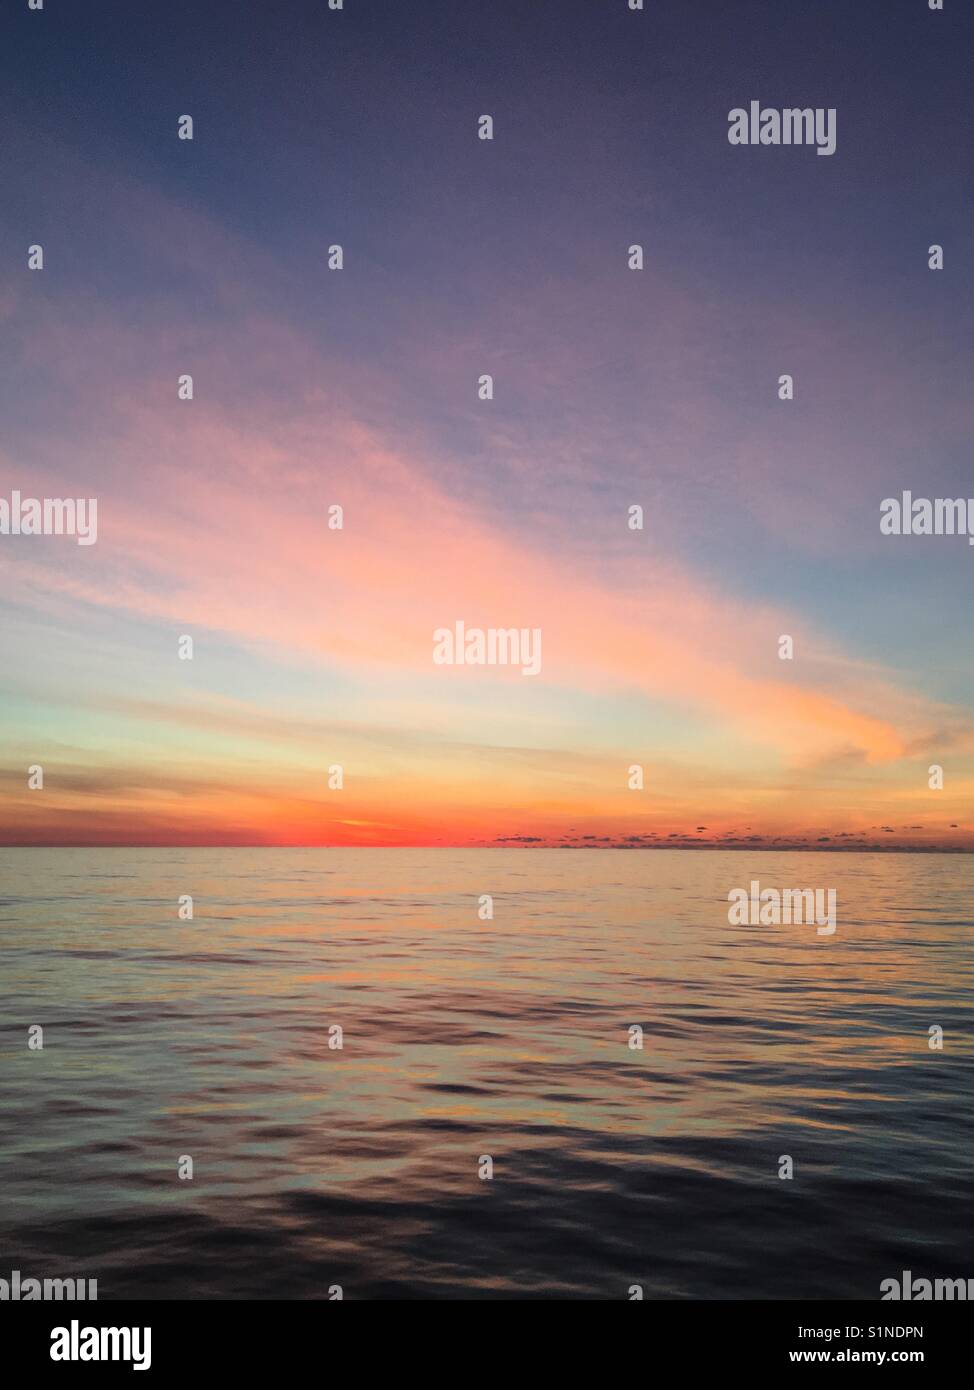 Sunrise on a very calm Atlantic Ocean Stock Photo